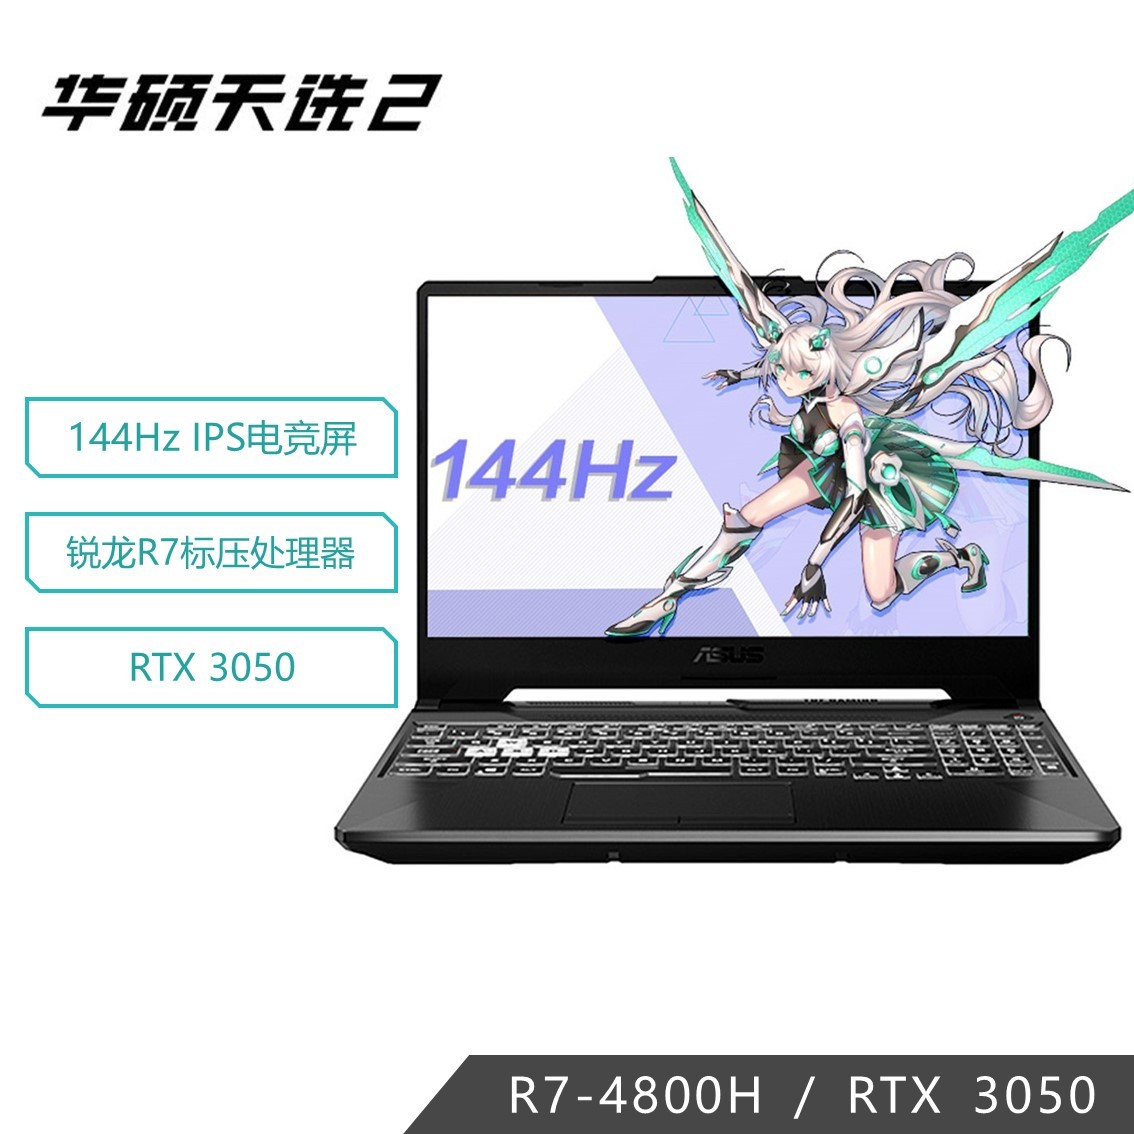 天选 15.6英寸游戏笔记本电脑(锐龙 7nm 8核 R7-4800H 16G 512GSSD RTX3050 144Hz)钛空灰